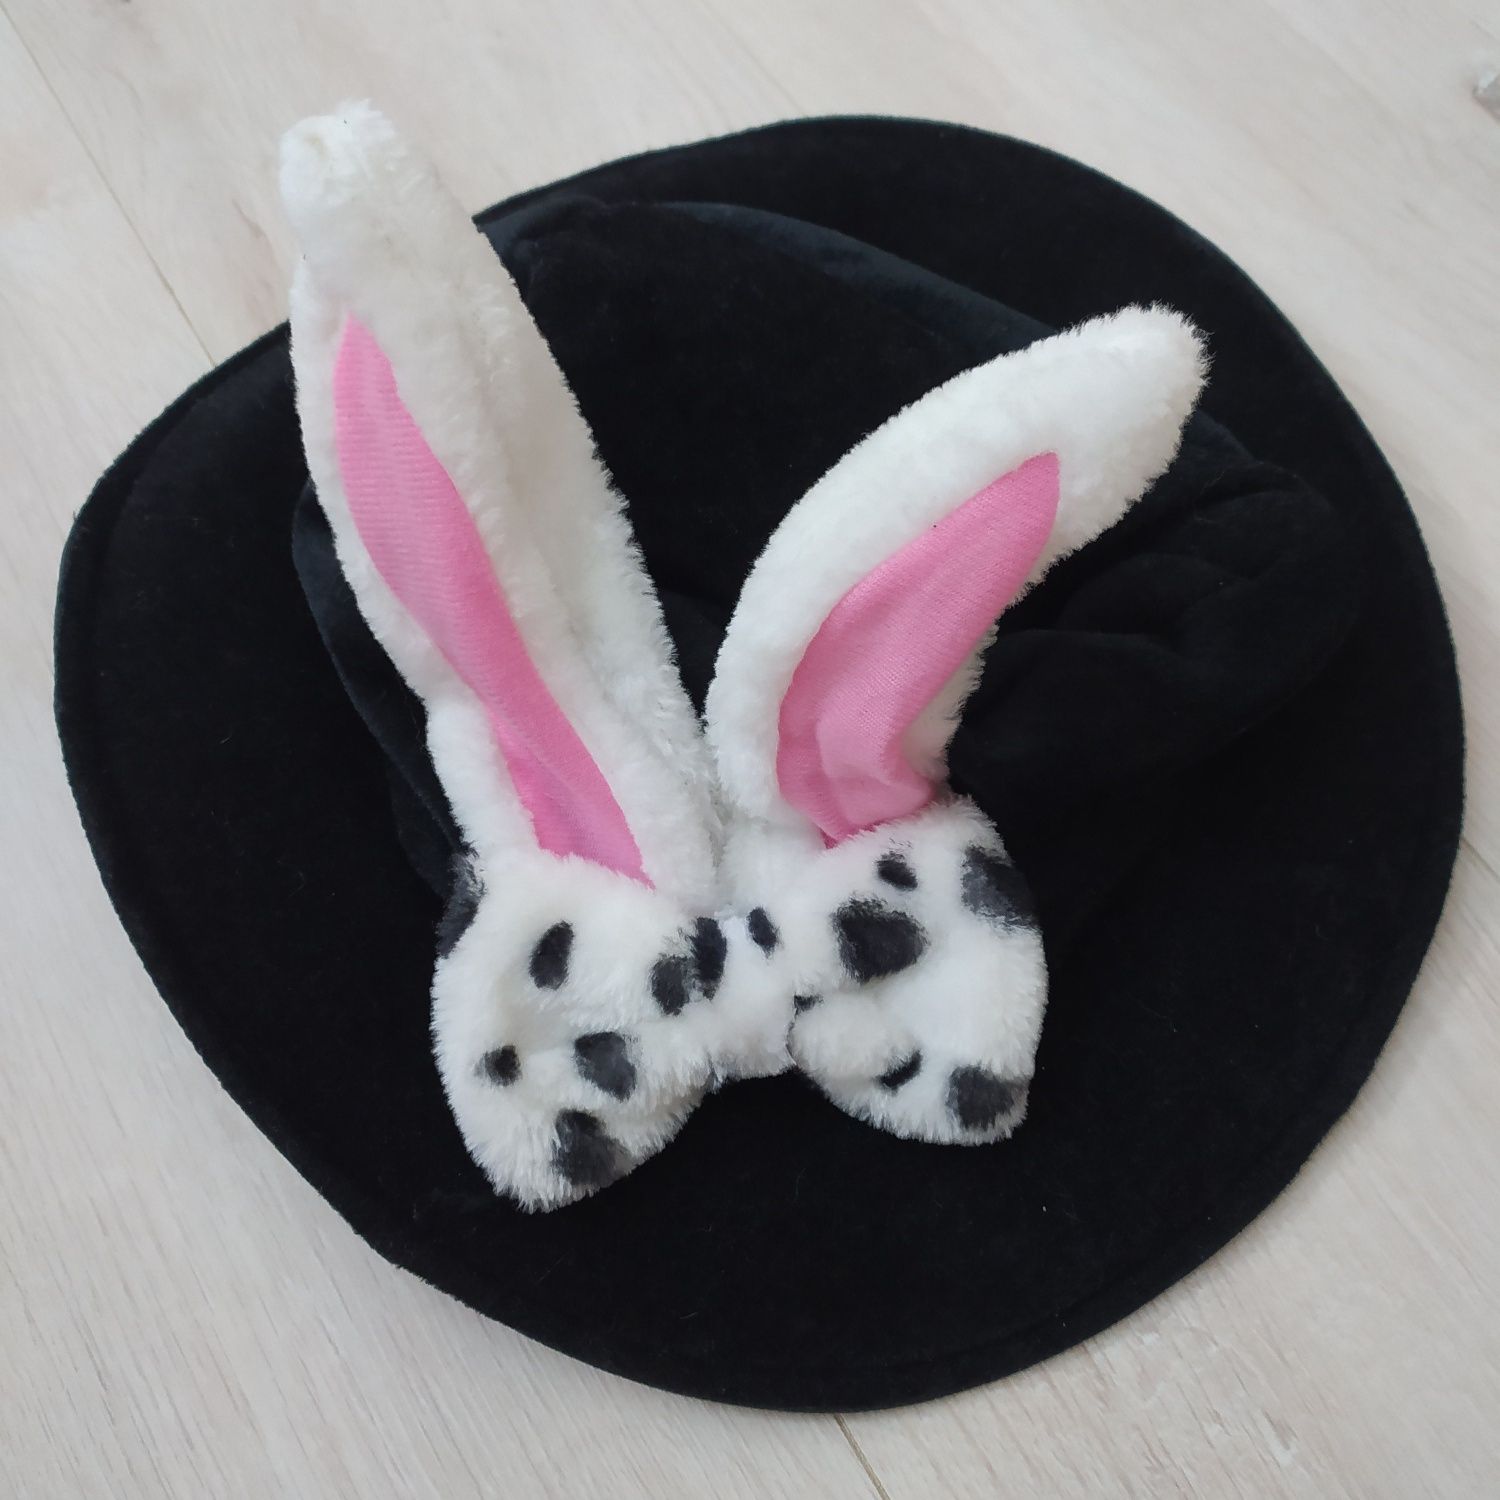 Шляпа зайца для утреника